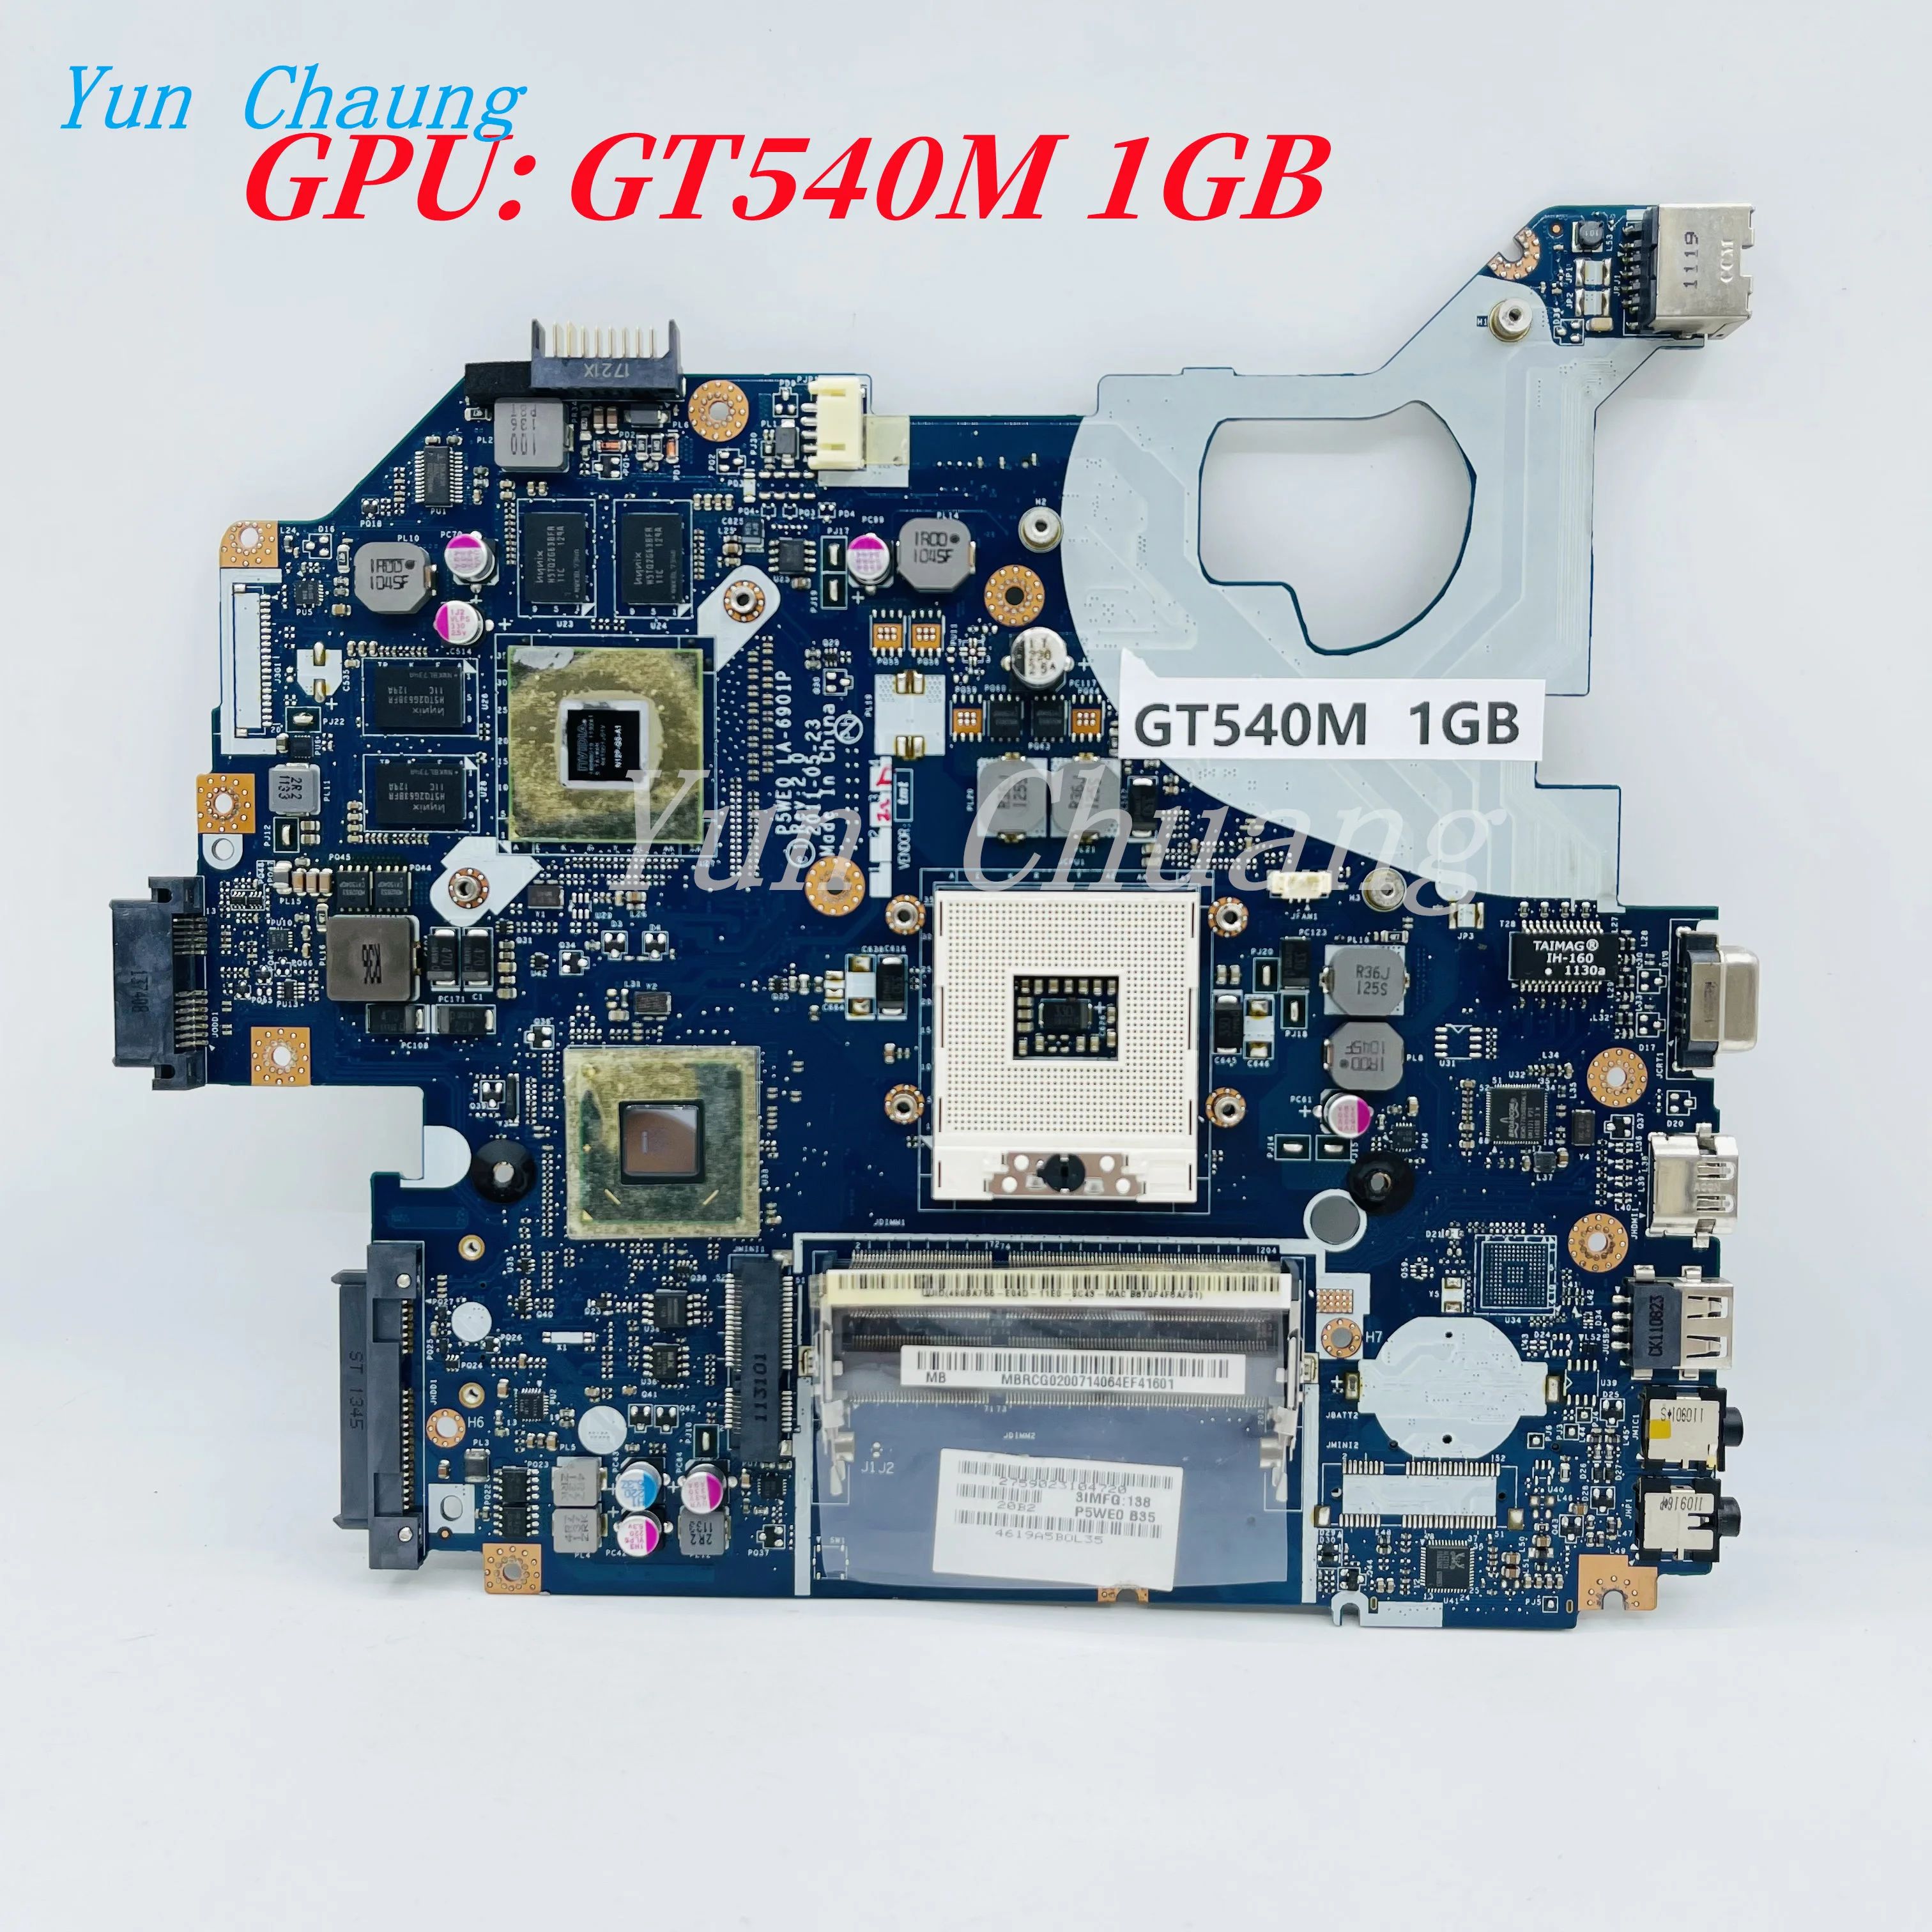 Konfiguration: GT540M 1 GB